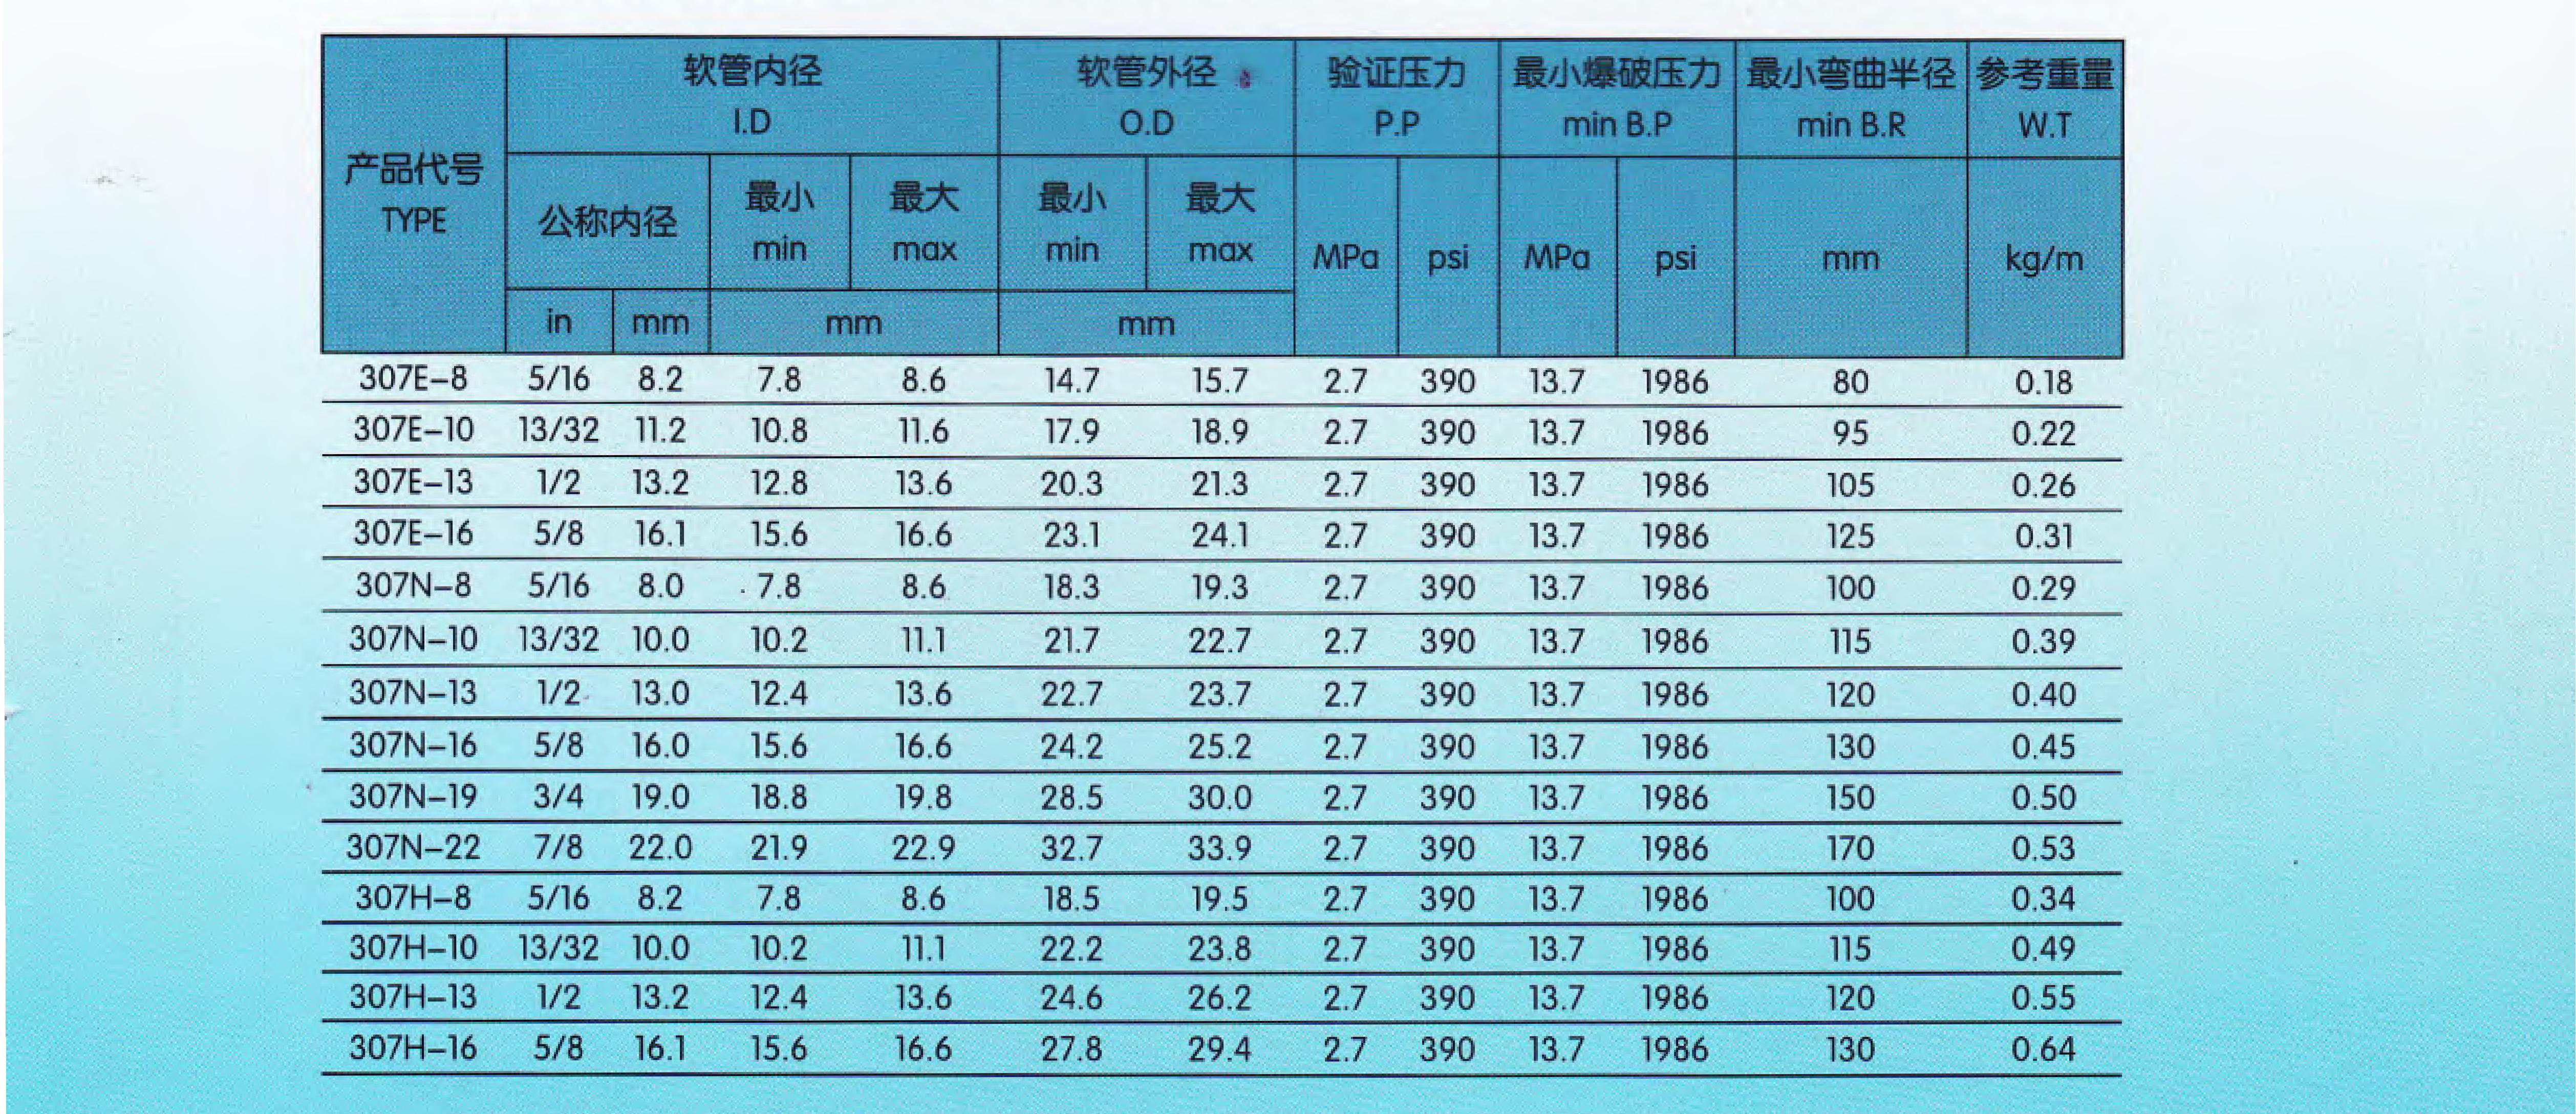 广州天河穗天307系列R-134a汽车空调胶管SAE J206